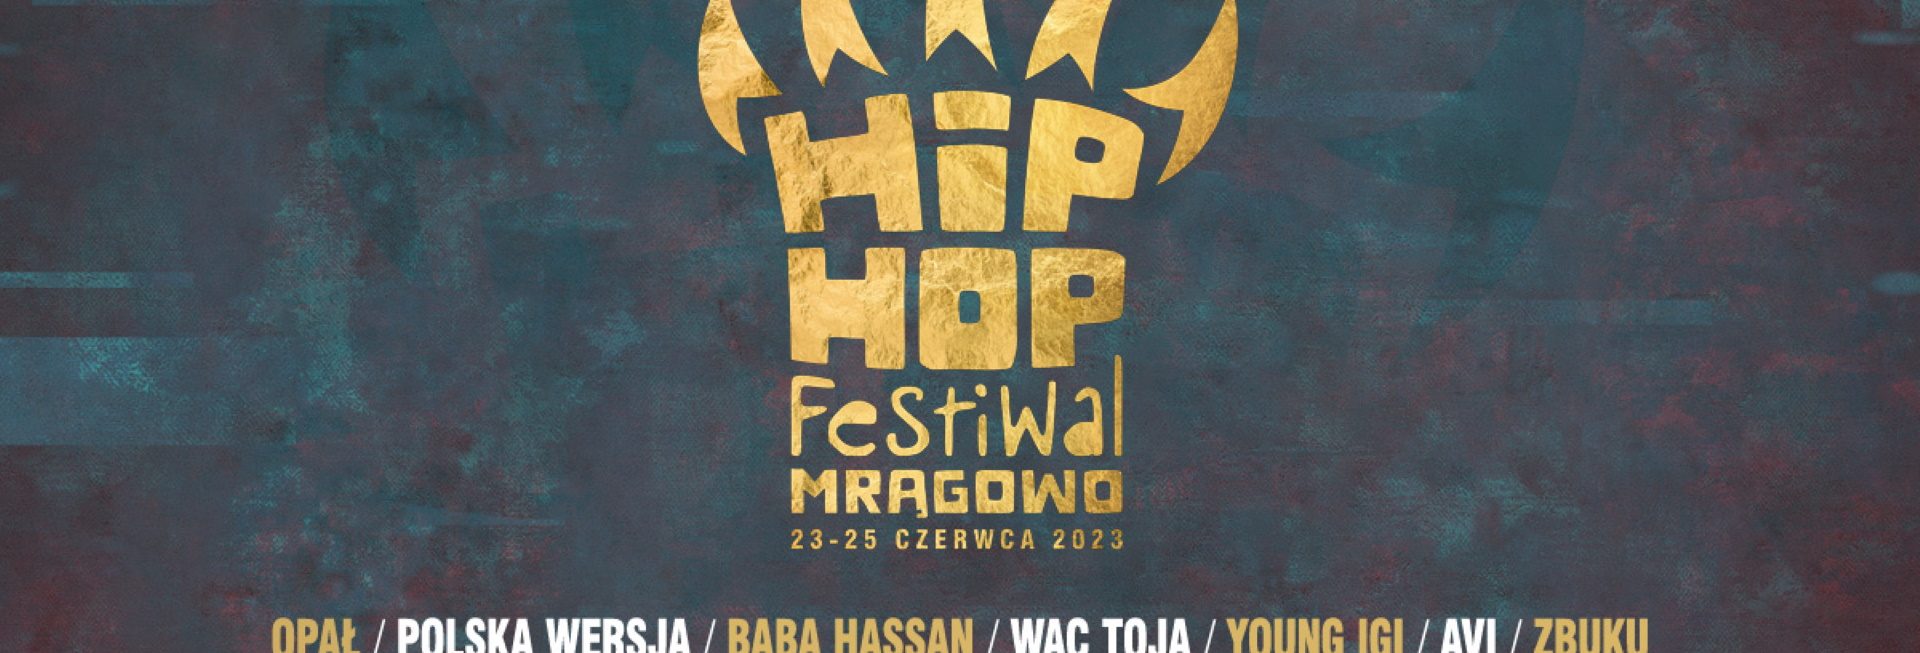 Plakat zapraszający w dniach 23-25 czerwca 2023 r. do Mrągowa na Hip-Hop Festiwal Mrągowo 2023.